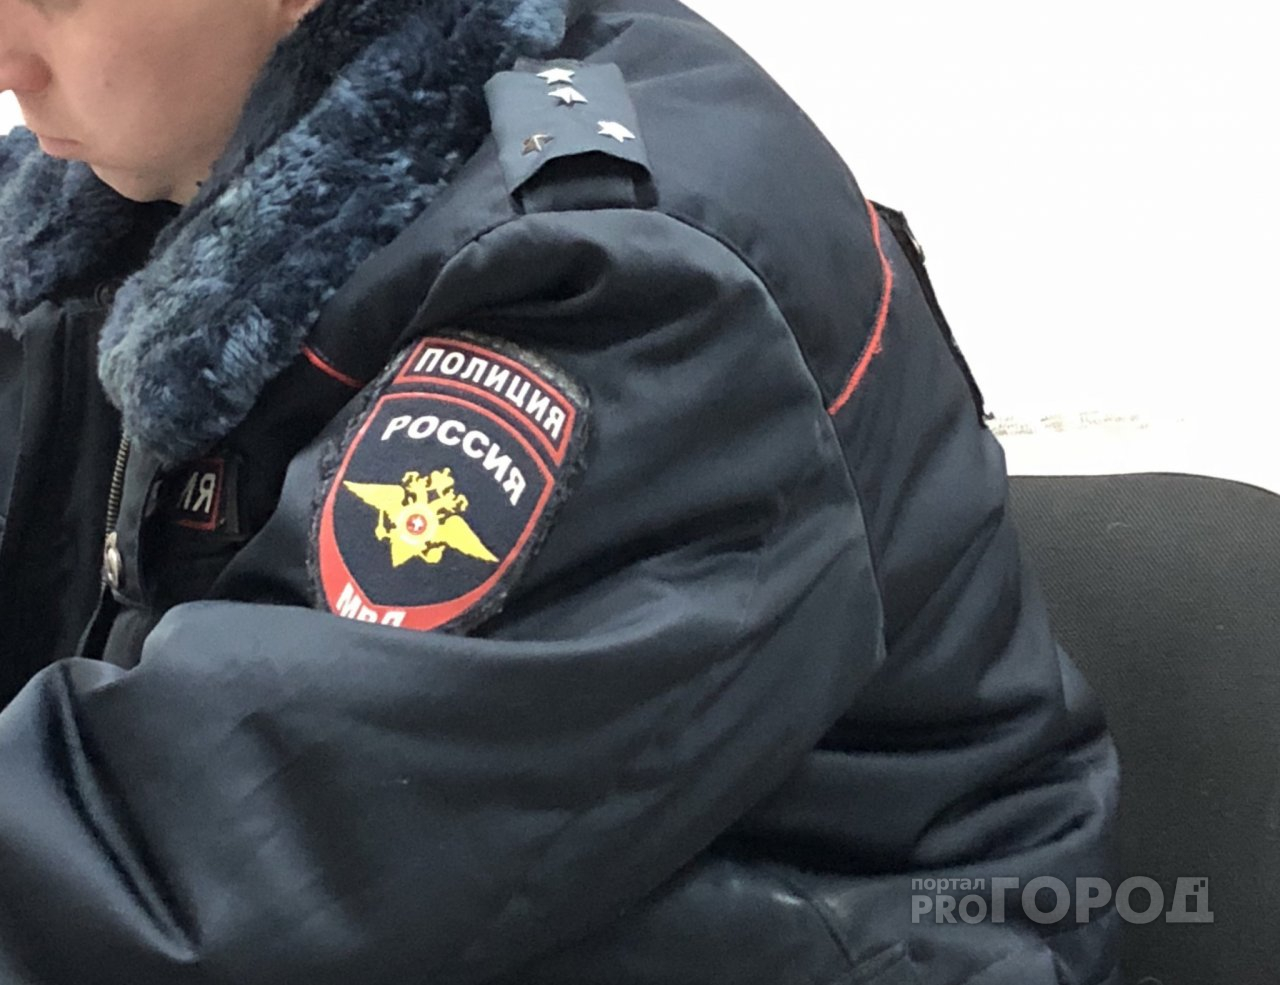 В центре Ярославля женщина зарезала своего мужа и сама сдалась в полицию